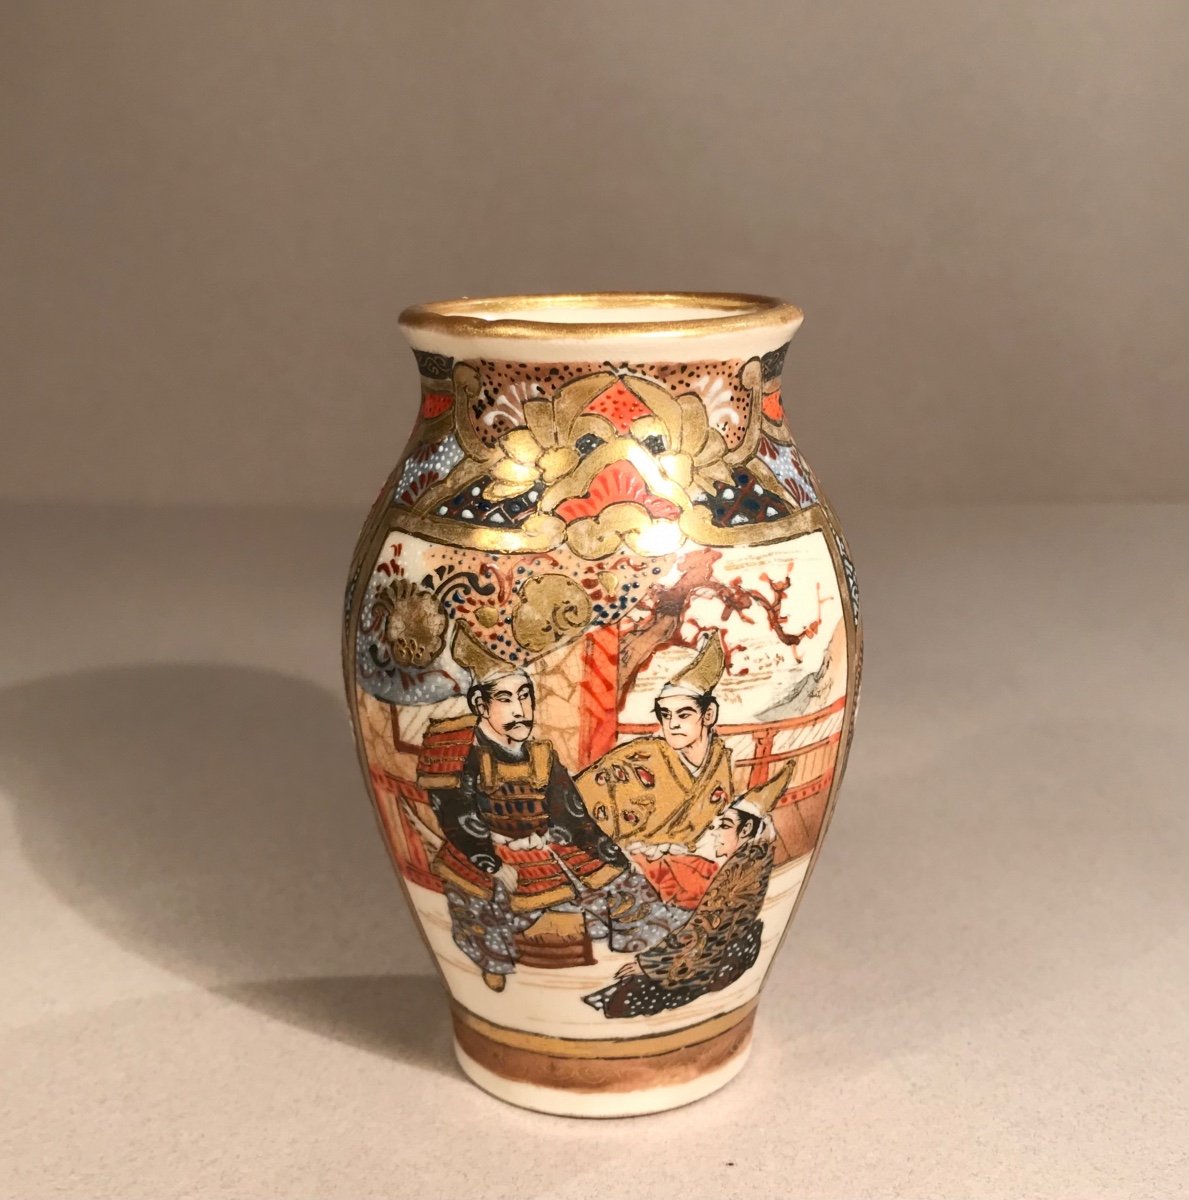 Asian Arts Japan Satsuma Kilns Meiji Period Miniature Earthenware Vase With Enamelled Decor 1880/90-photo-1